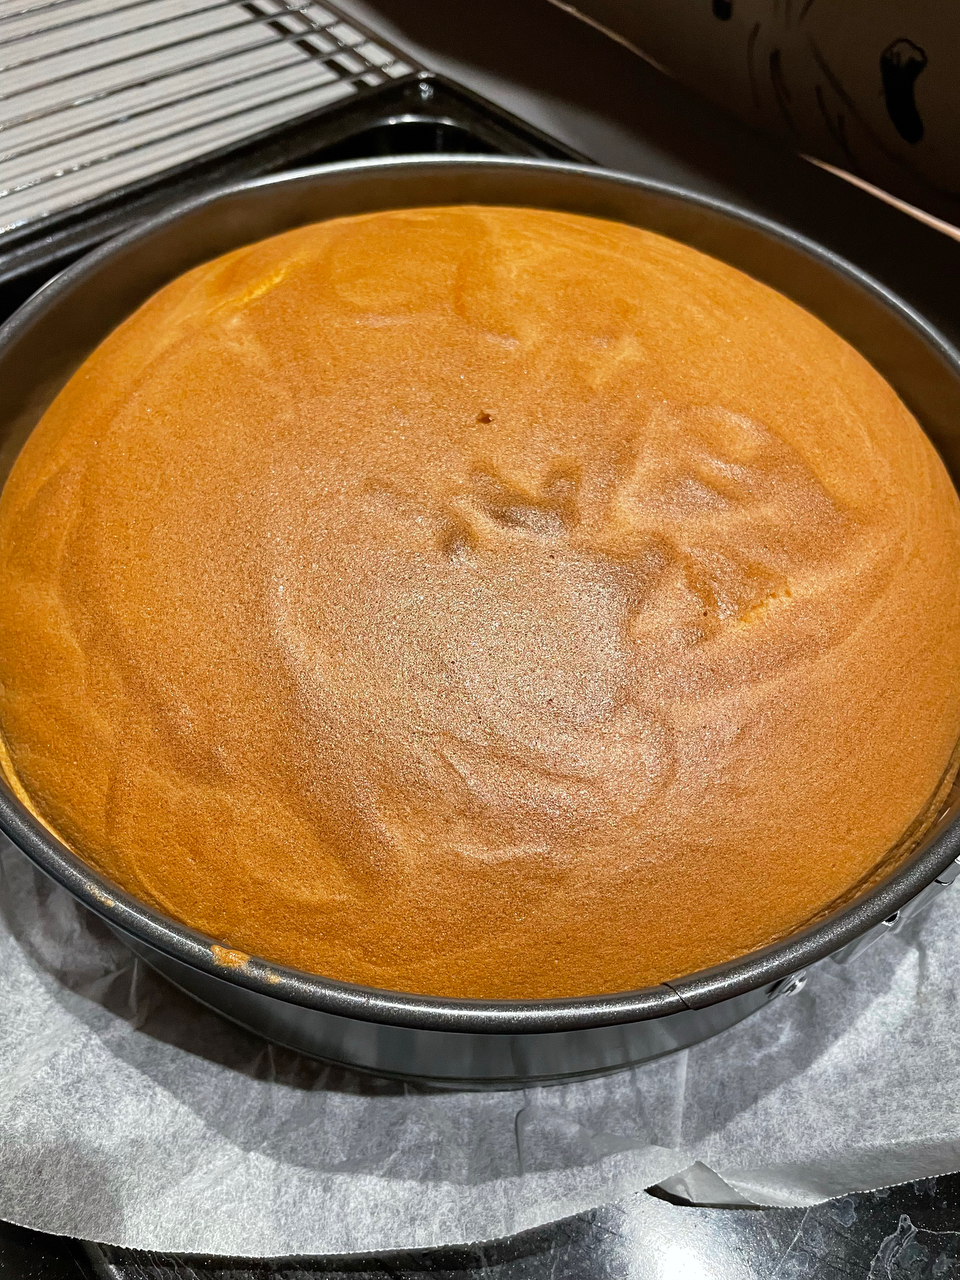 日式橙汁云朵蛋糕